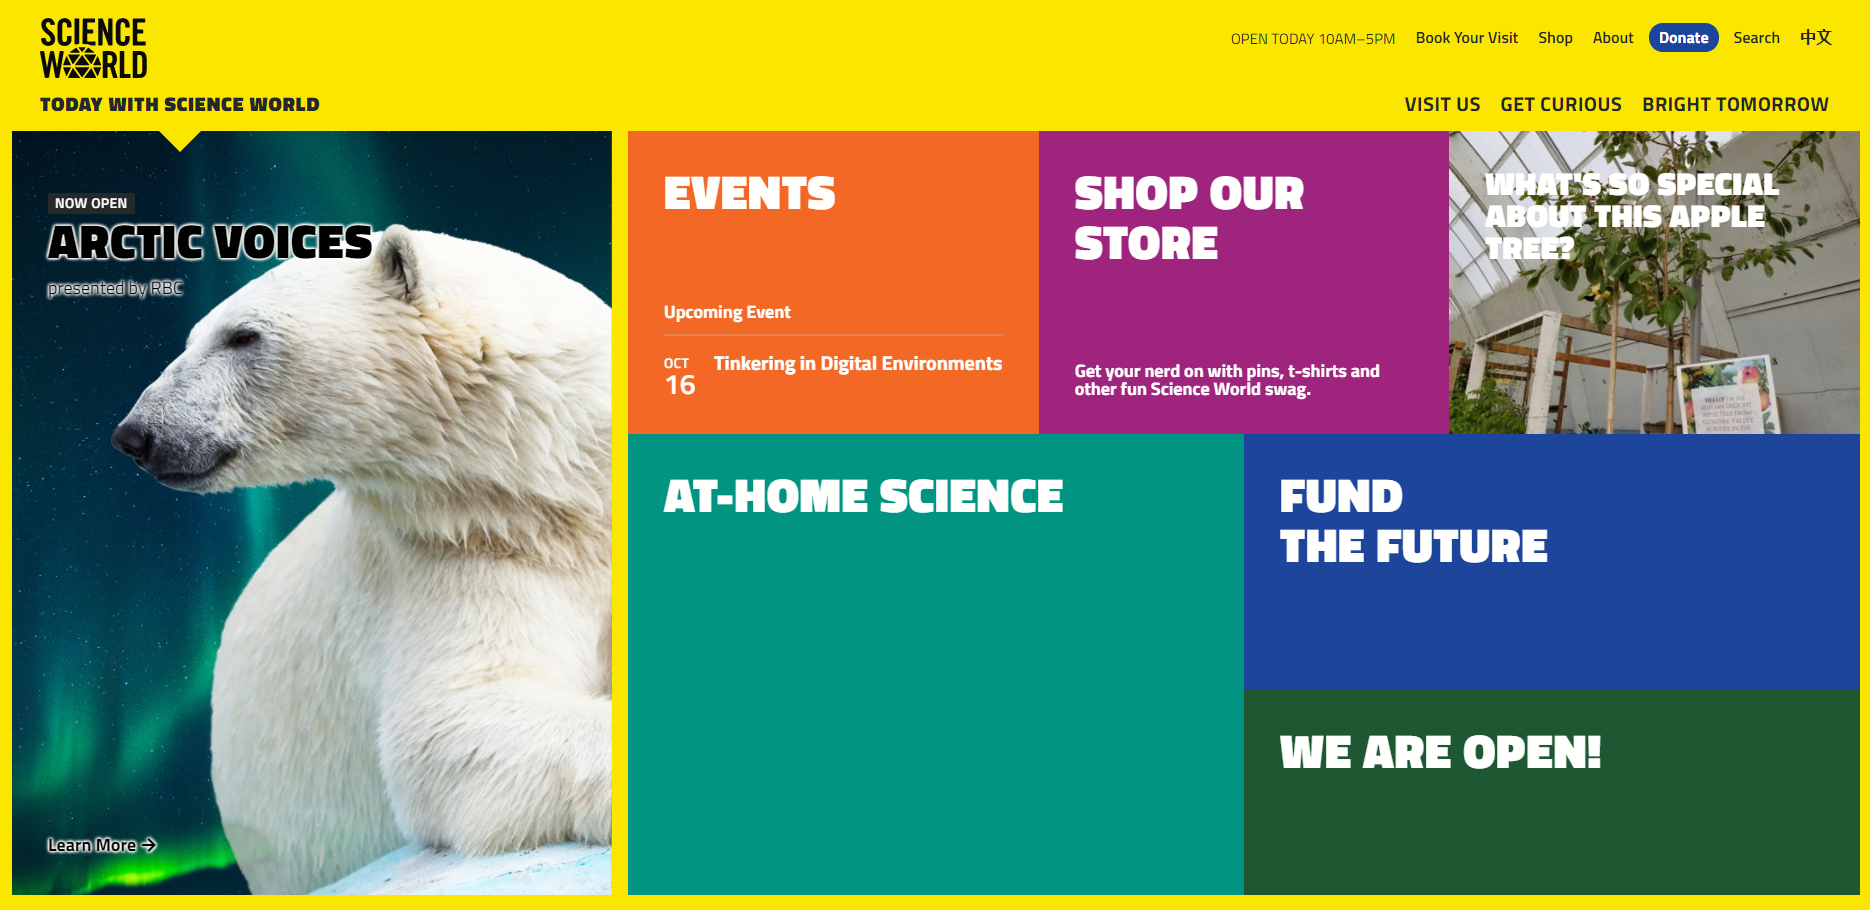 Science World's website utlizes multiple visual cues.